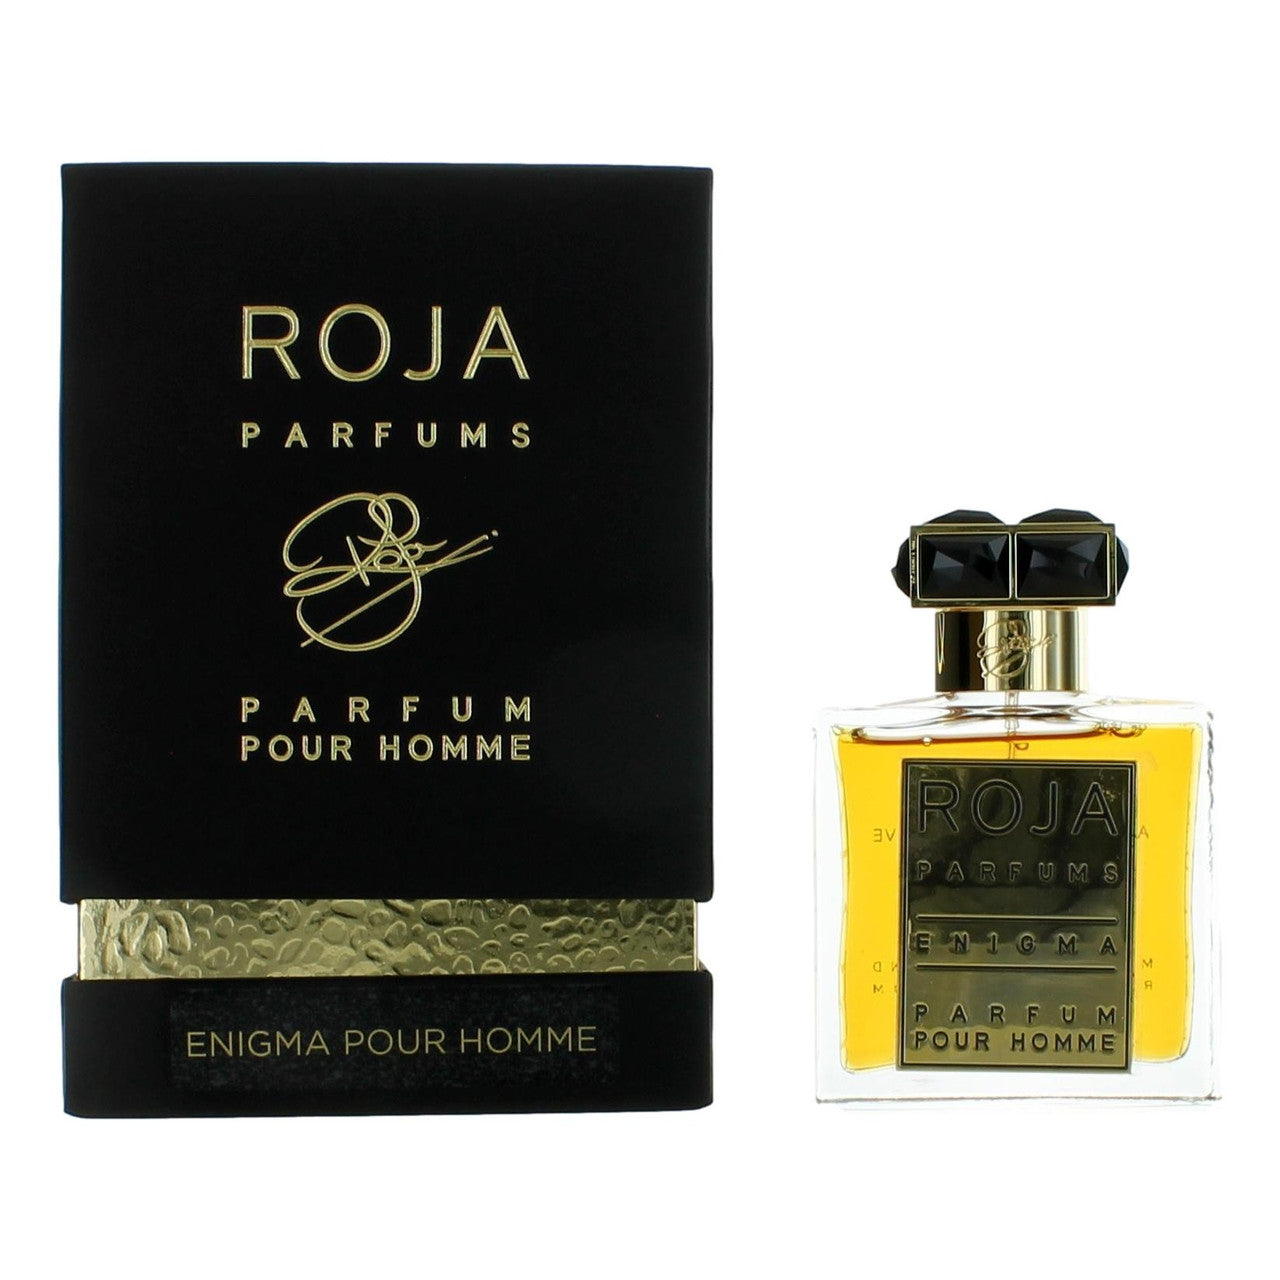 Enigma Pour Homme by Roja Parfums 1.7 oz Parfum Spray for Men